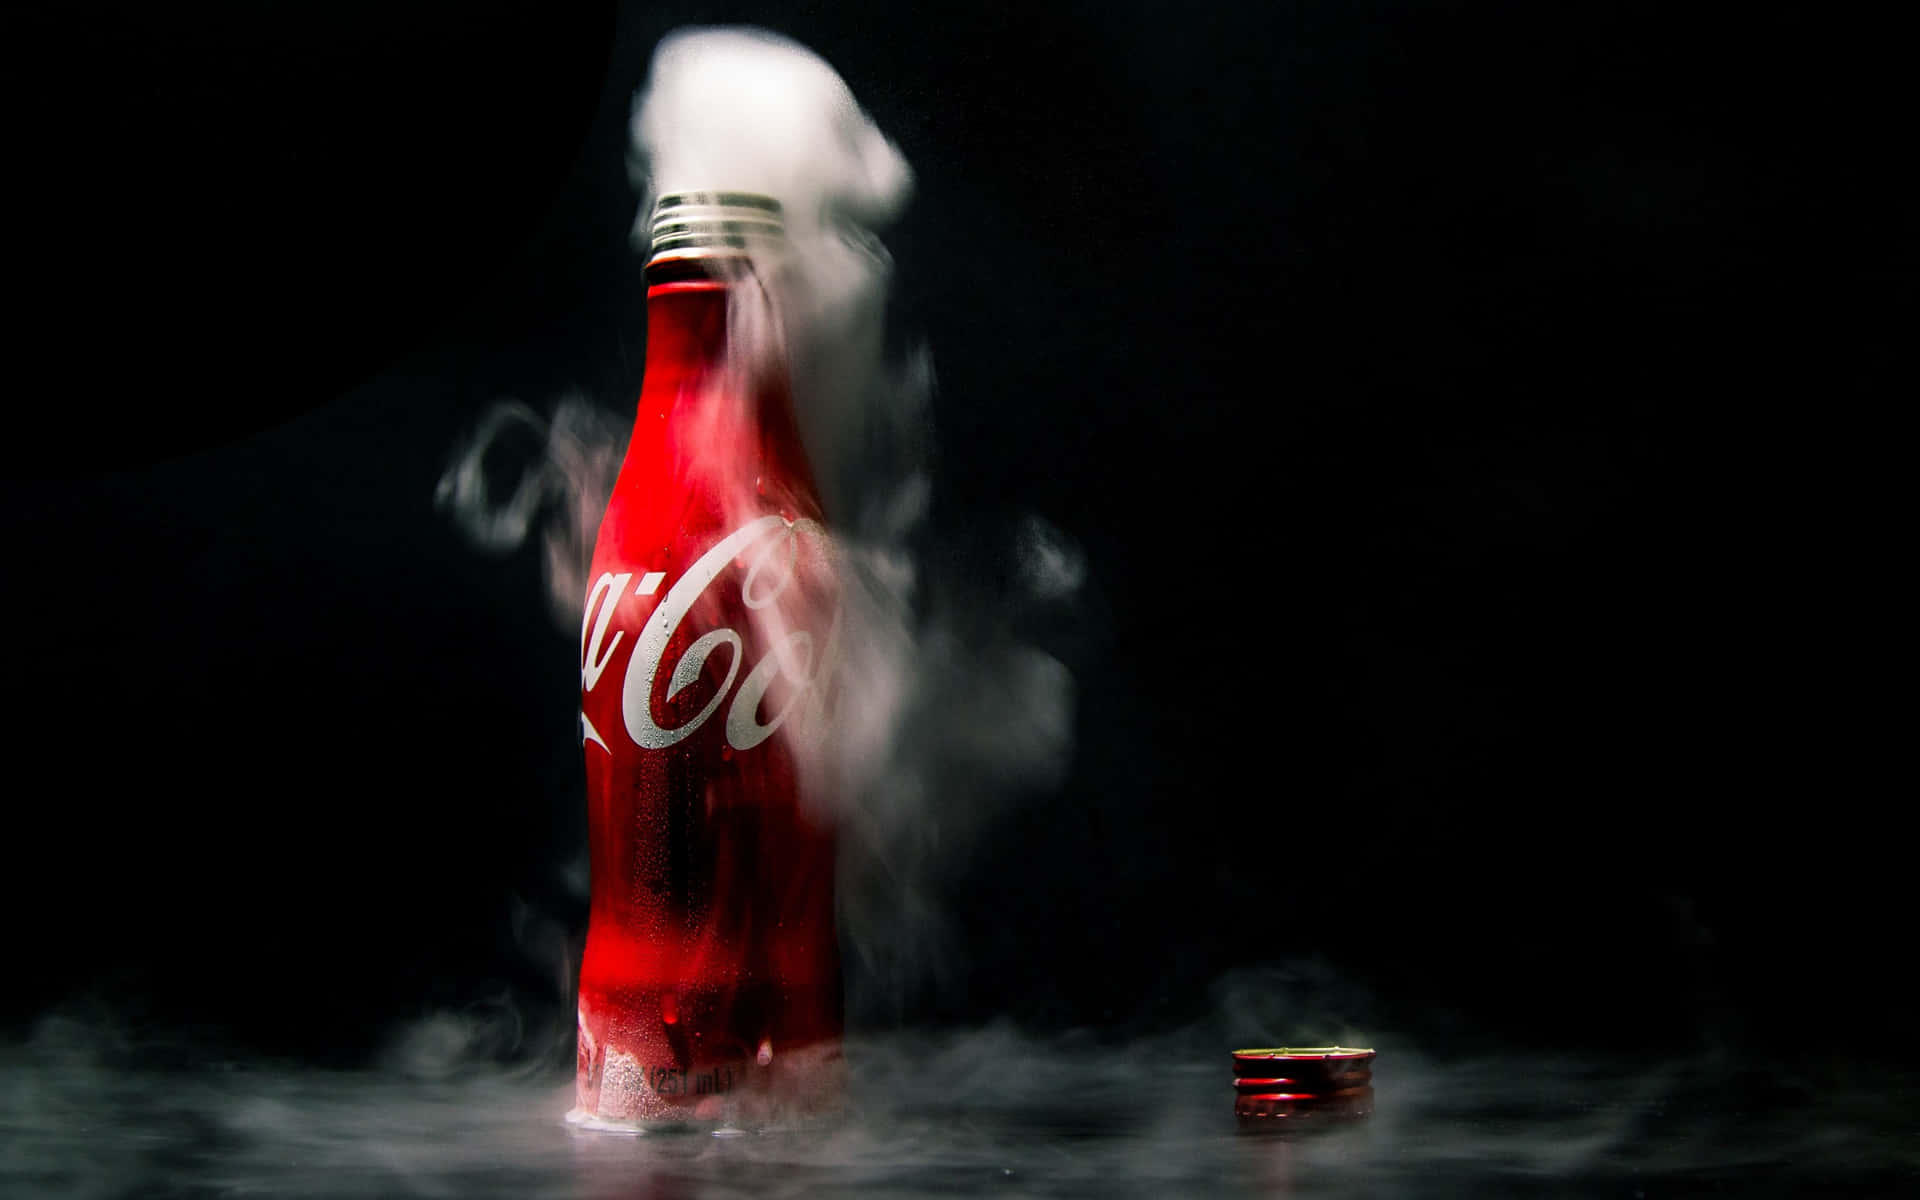 Unabotella De Coca Cola Está Goteando.